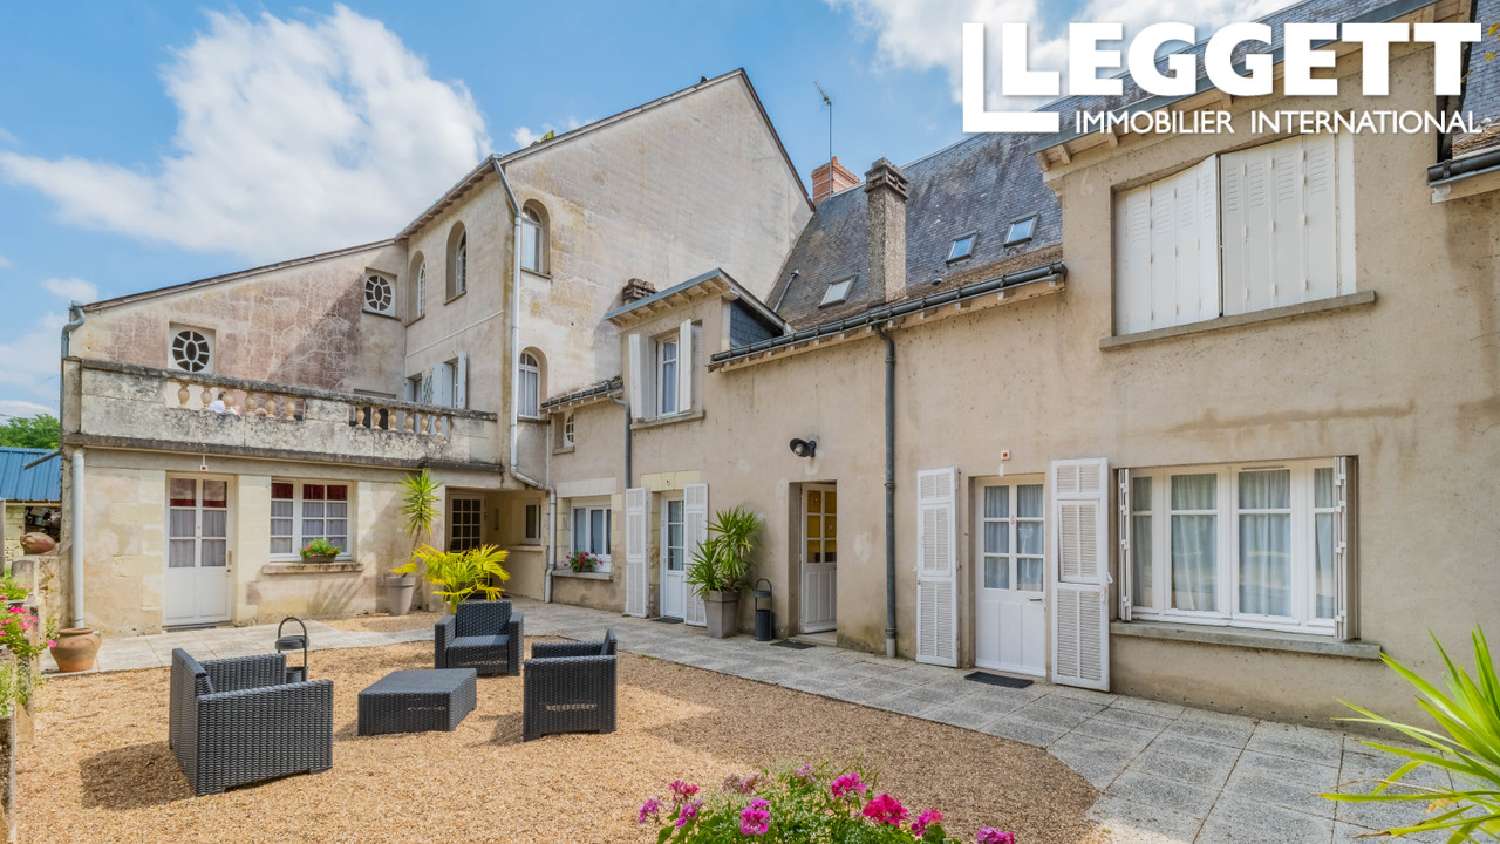  à vendre château Chinon Indre-et-Loire 4